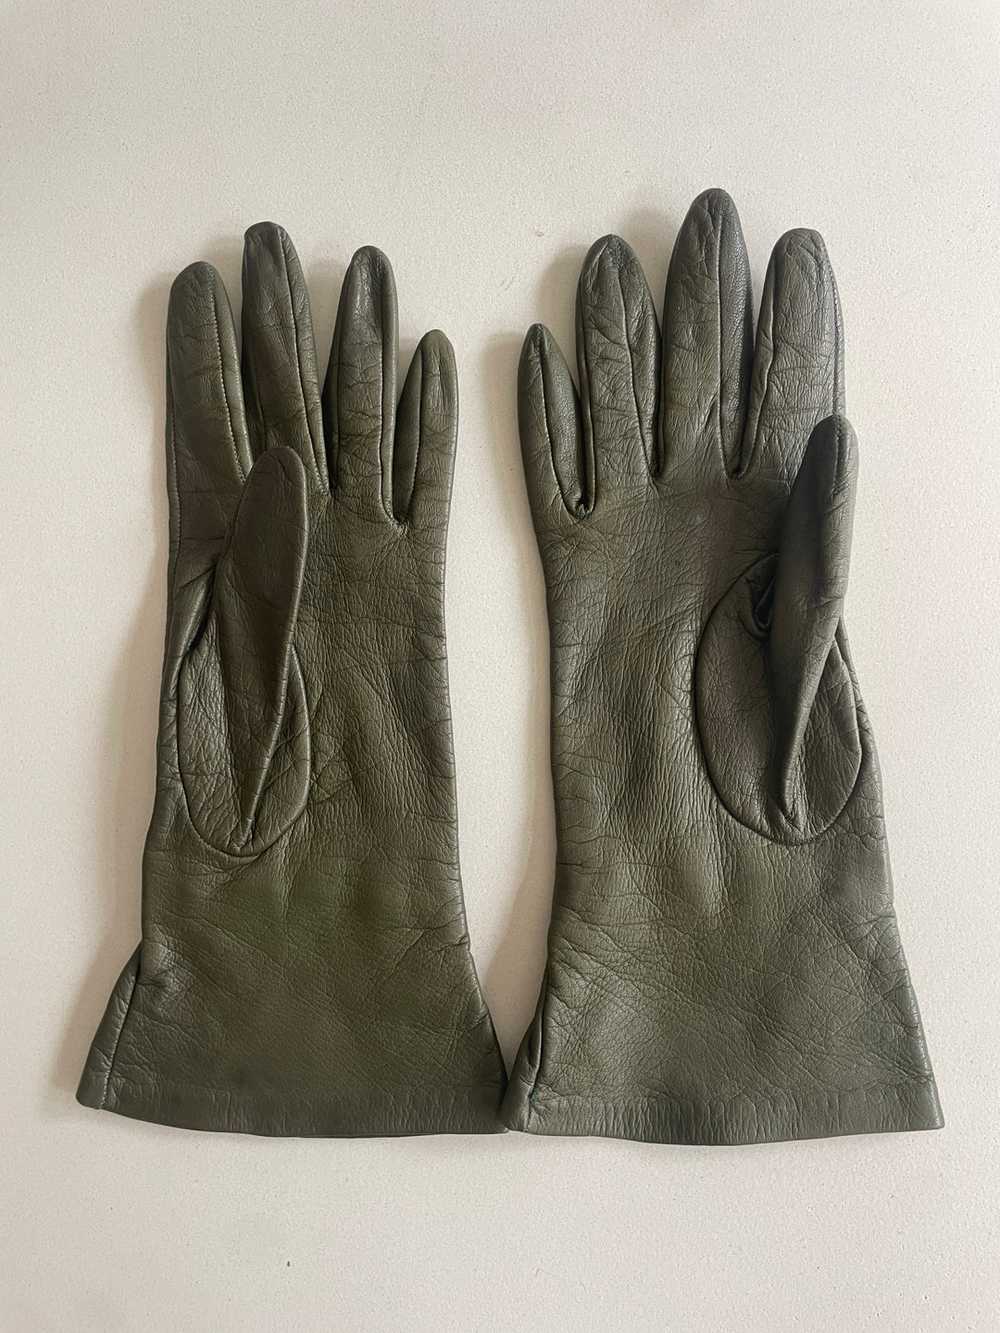 Vintage Green Kid Leather Gloves - image 3